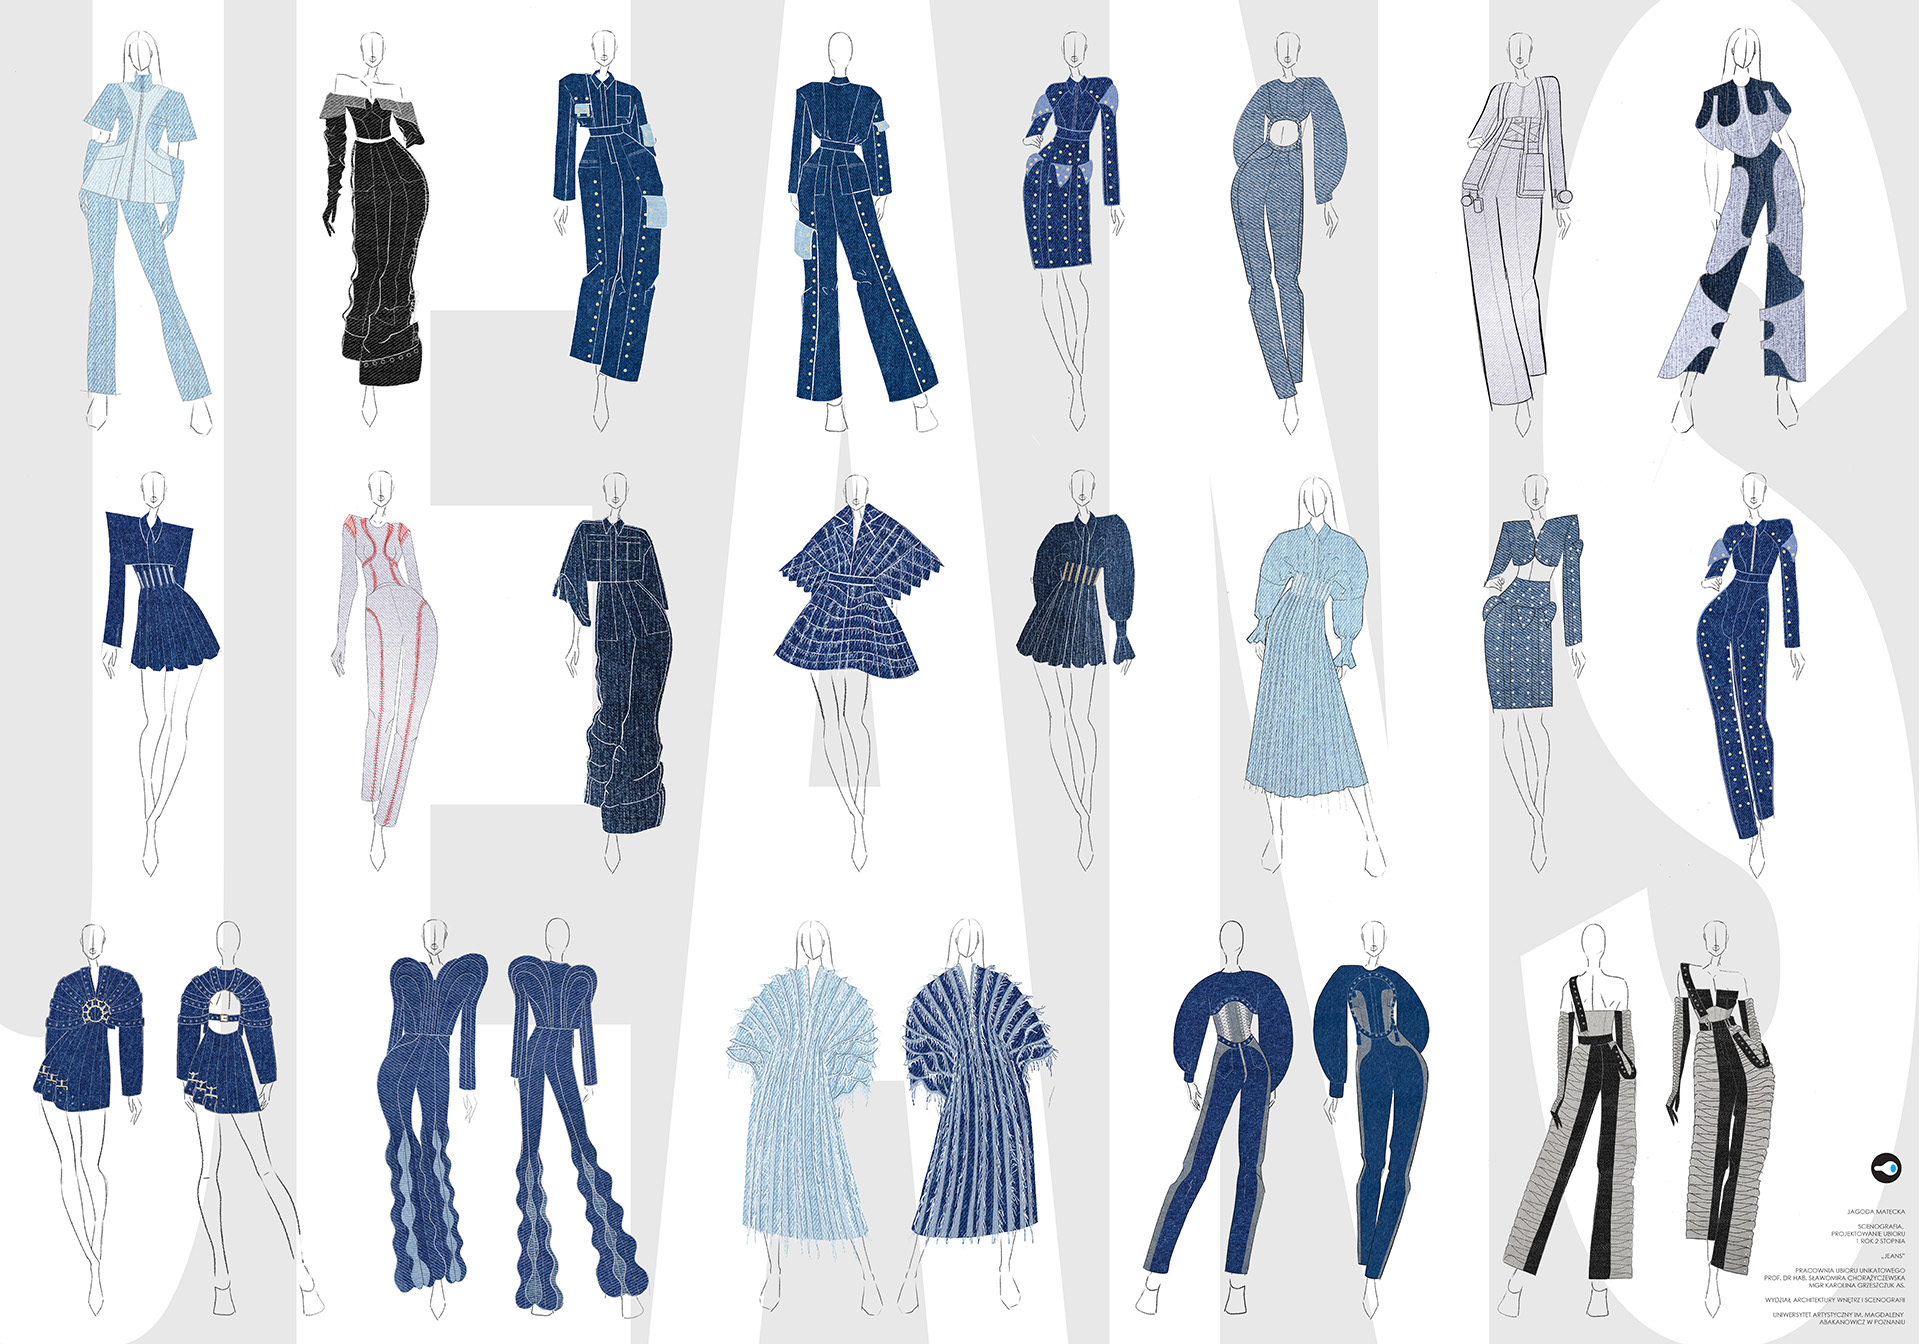 Zastaw narysowanych projektów ubiorów zestawiony w trzech rzędach. Wszystkie sylwetki dżinsowe, głównie w odcieniach niebieskiego.